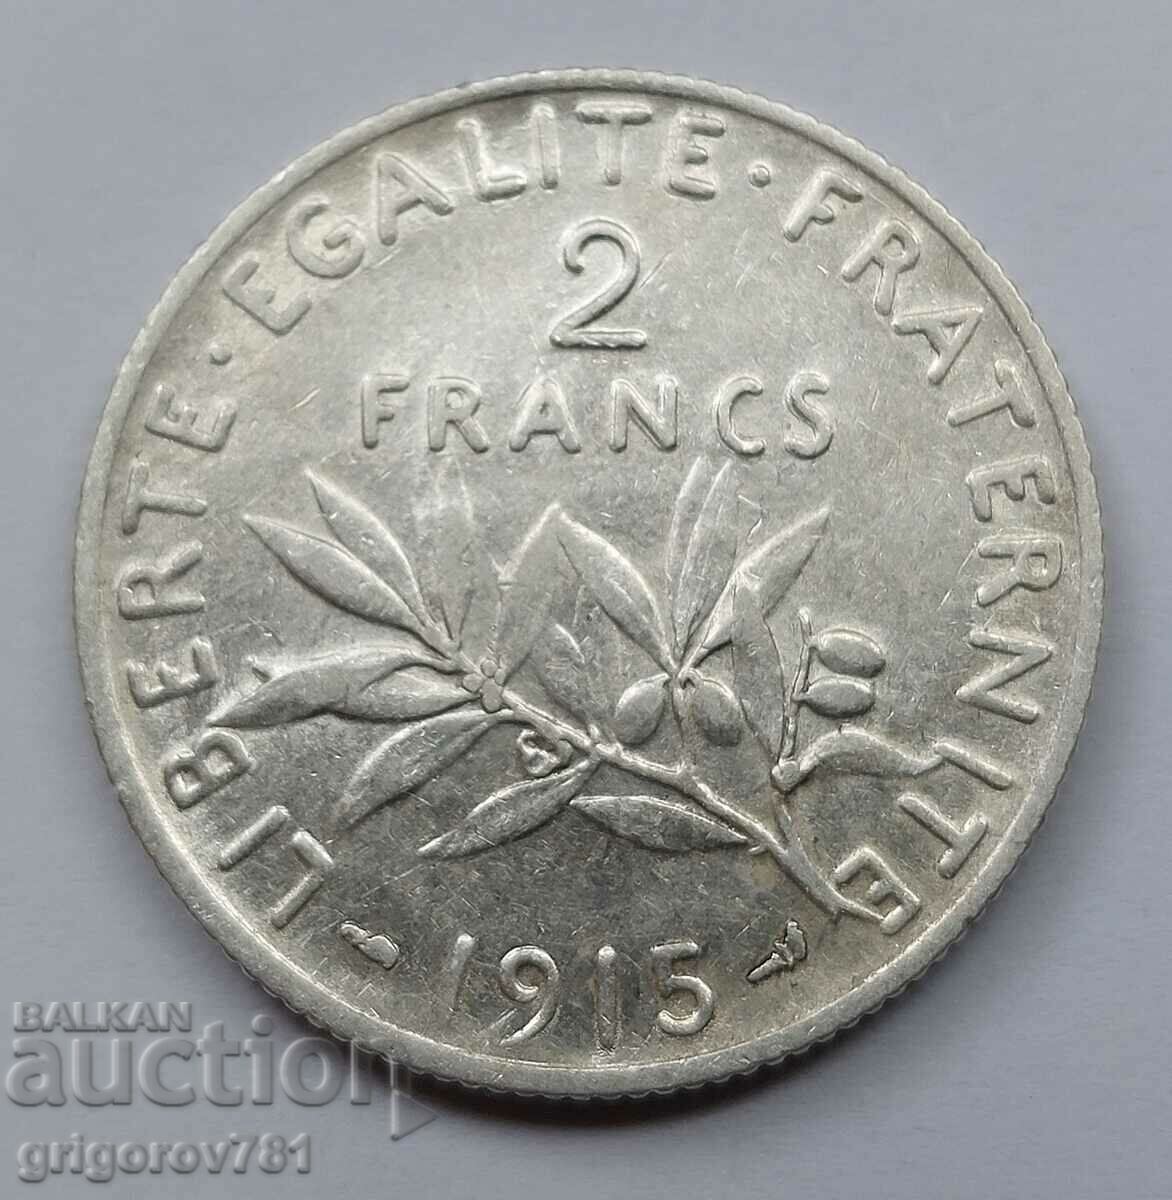 2 Franci Argint Franta 1915 - Moneda de argint #122